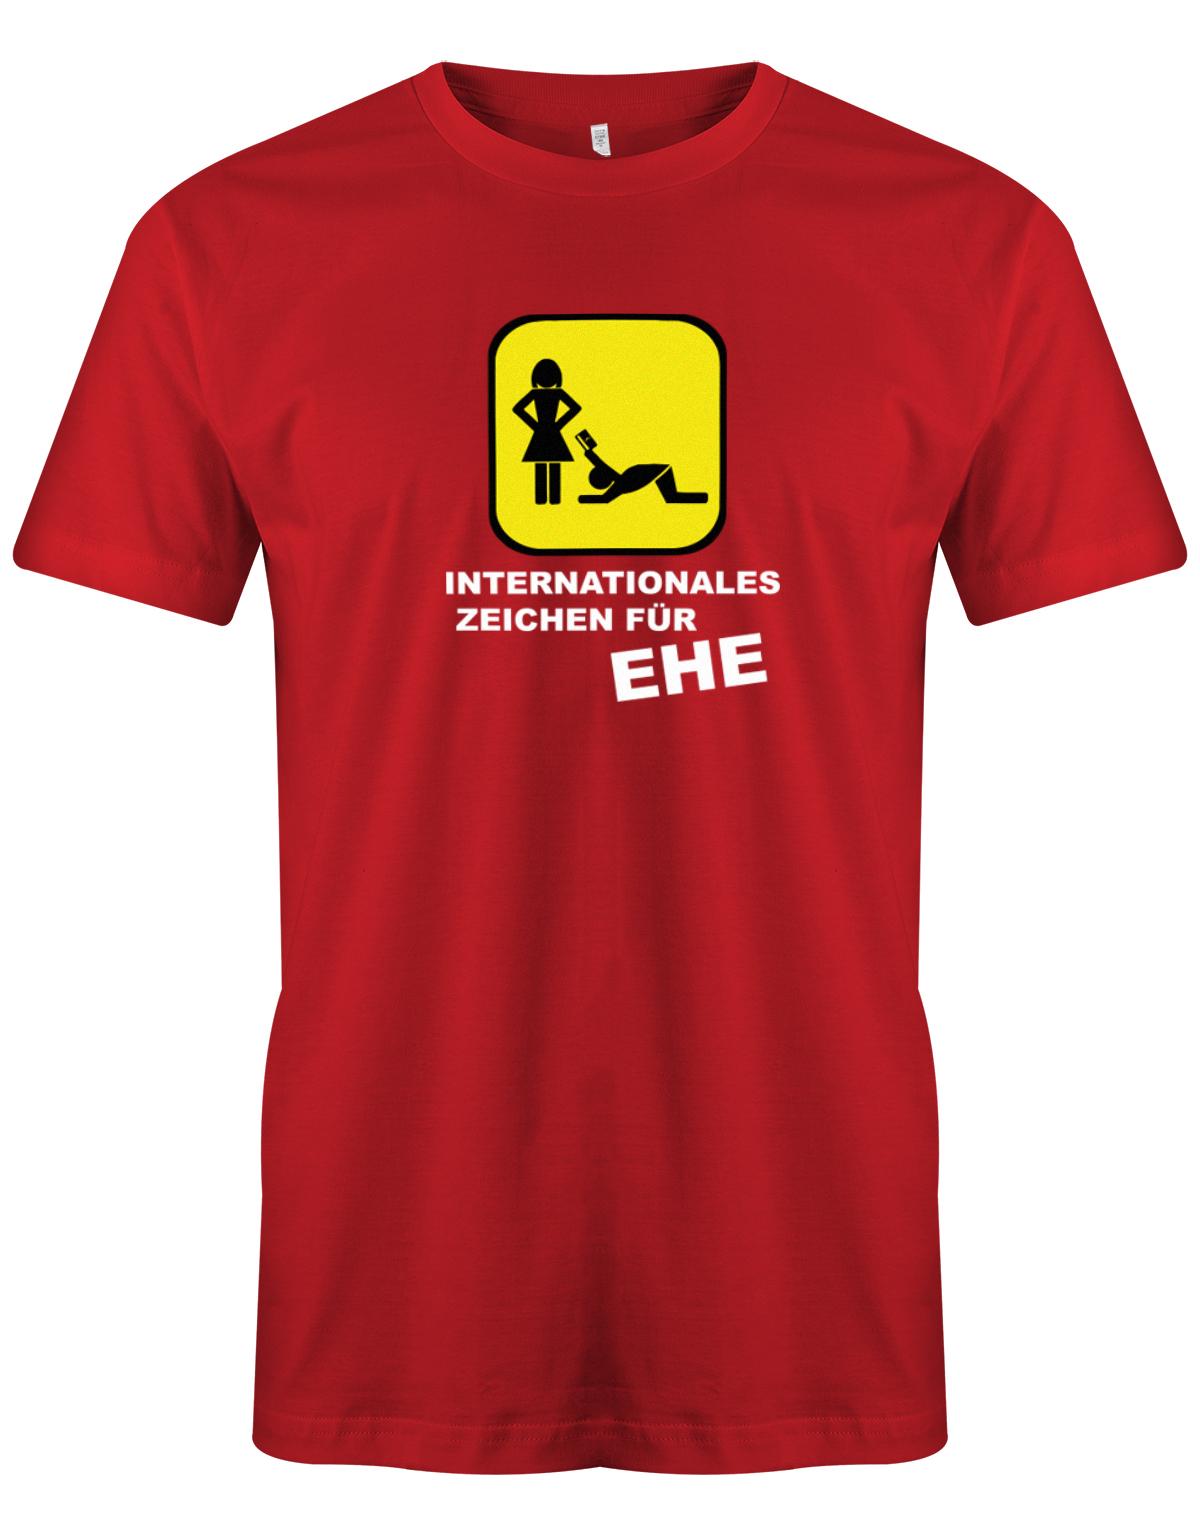 Internationales-zeichen-f-r-Ehe-Herren-Shirt-Rot